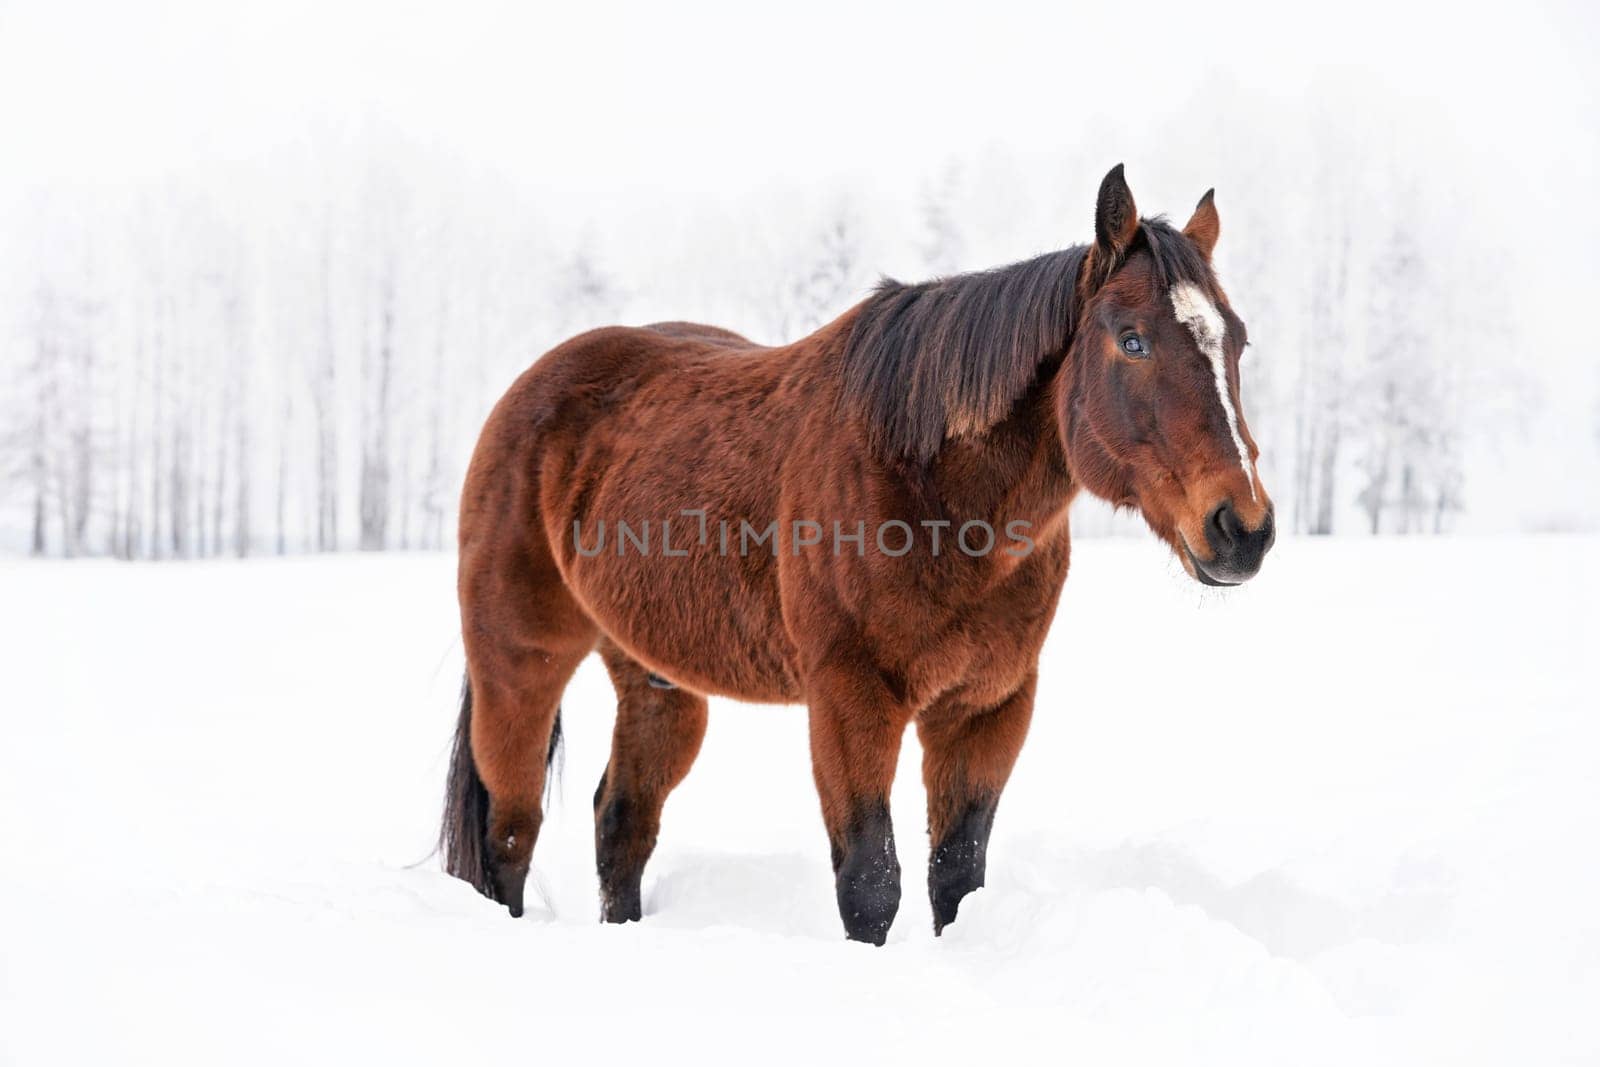 Dark brown horse walks on snow, blurred threes in background